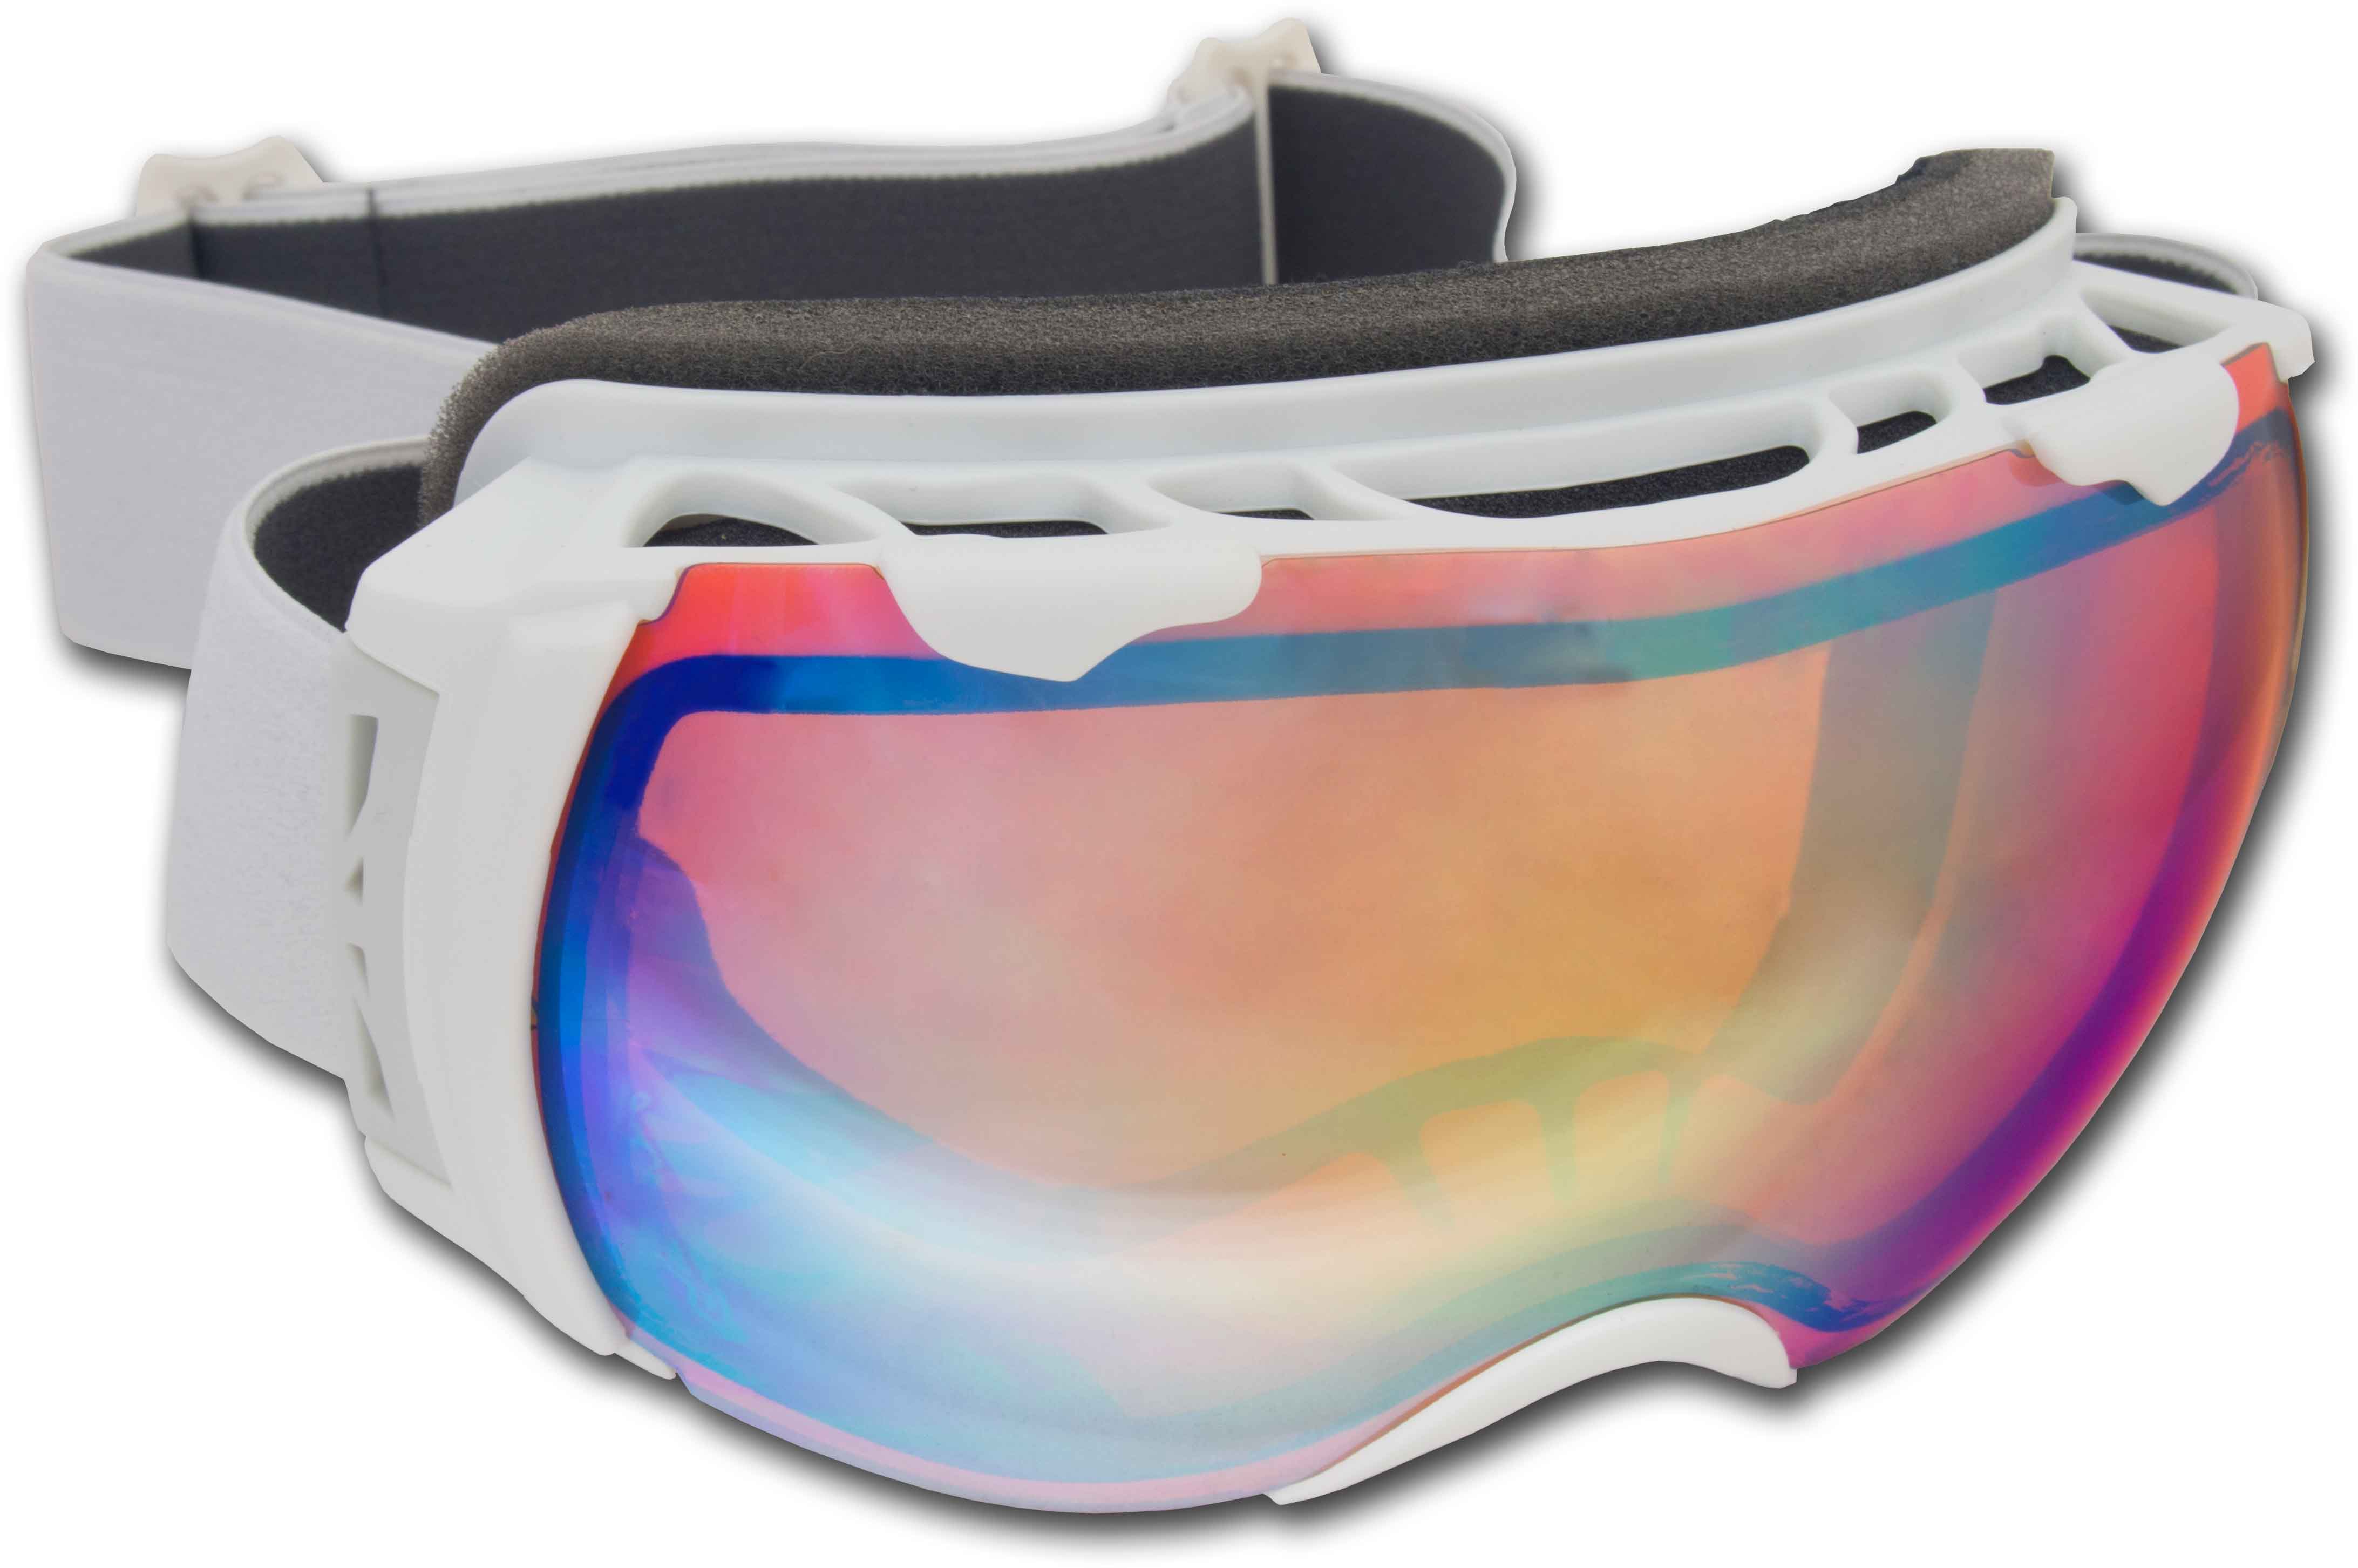 FLY - Ski goggles